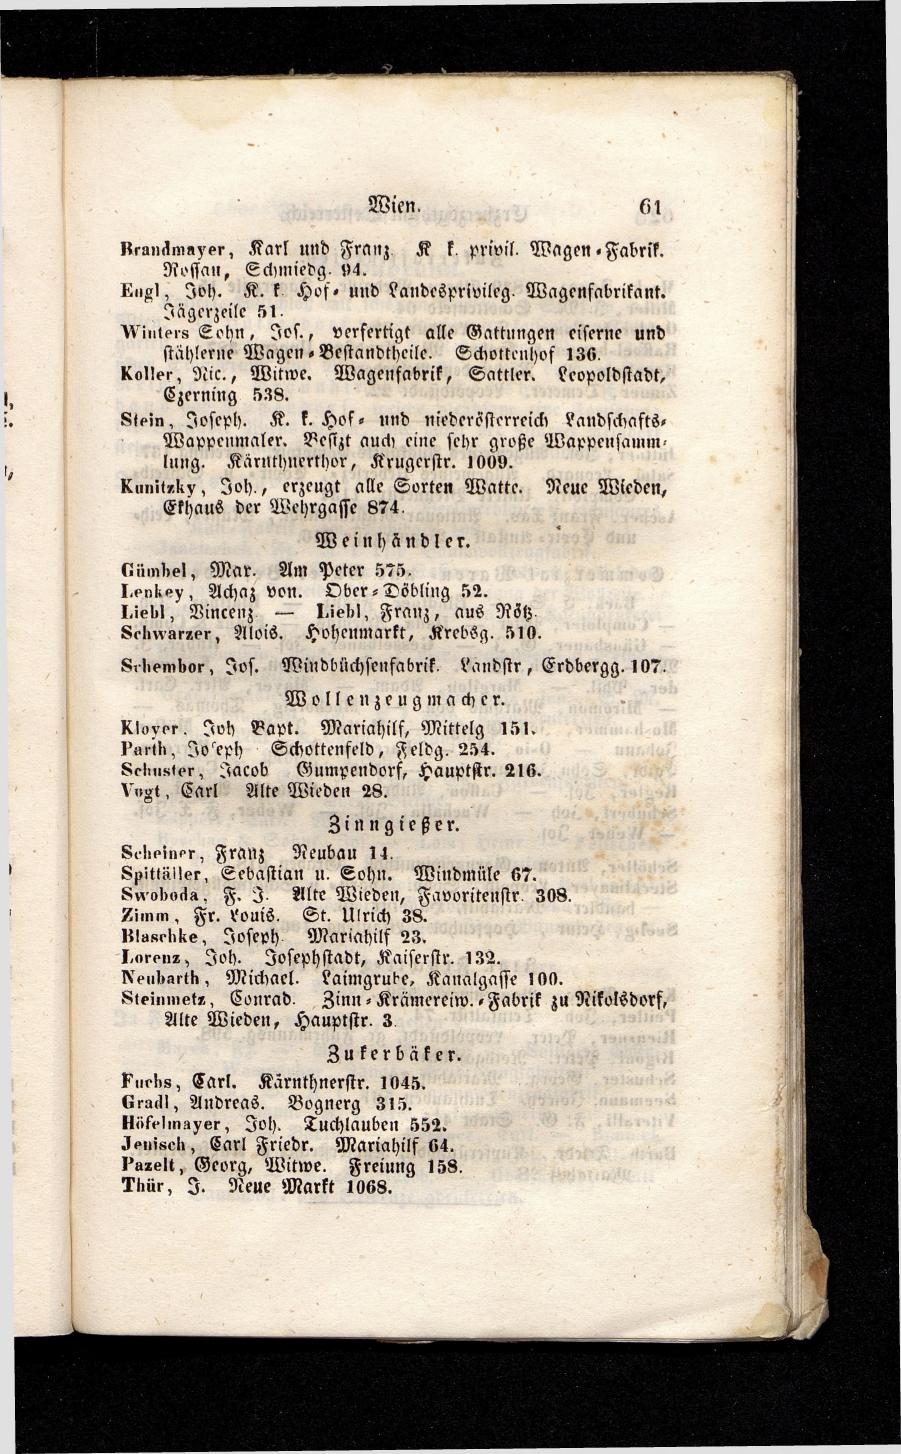 Grosses Adressbuch der Kaufleute. No. 13. Oesterreich ober u. unter der Enns 1844 - Seite 65